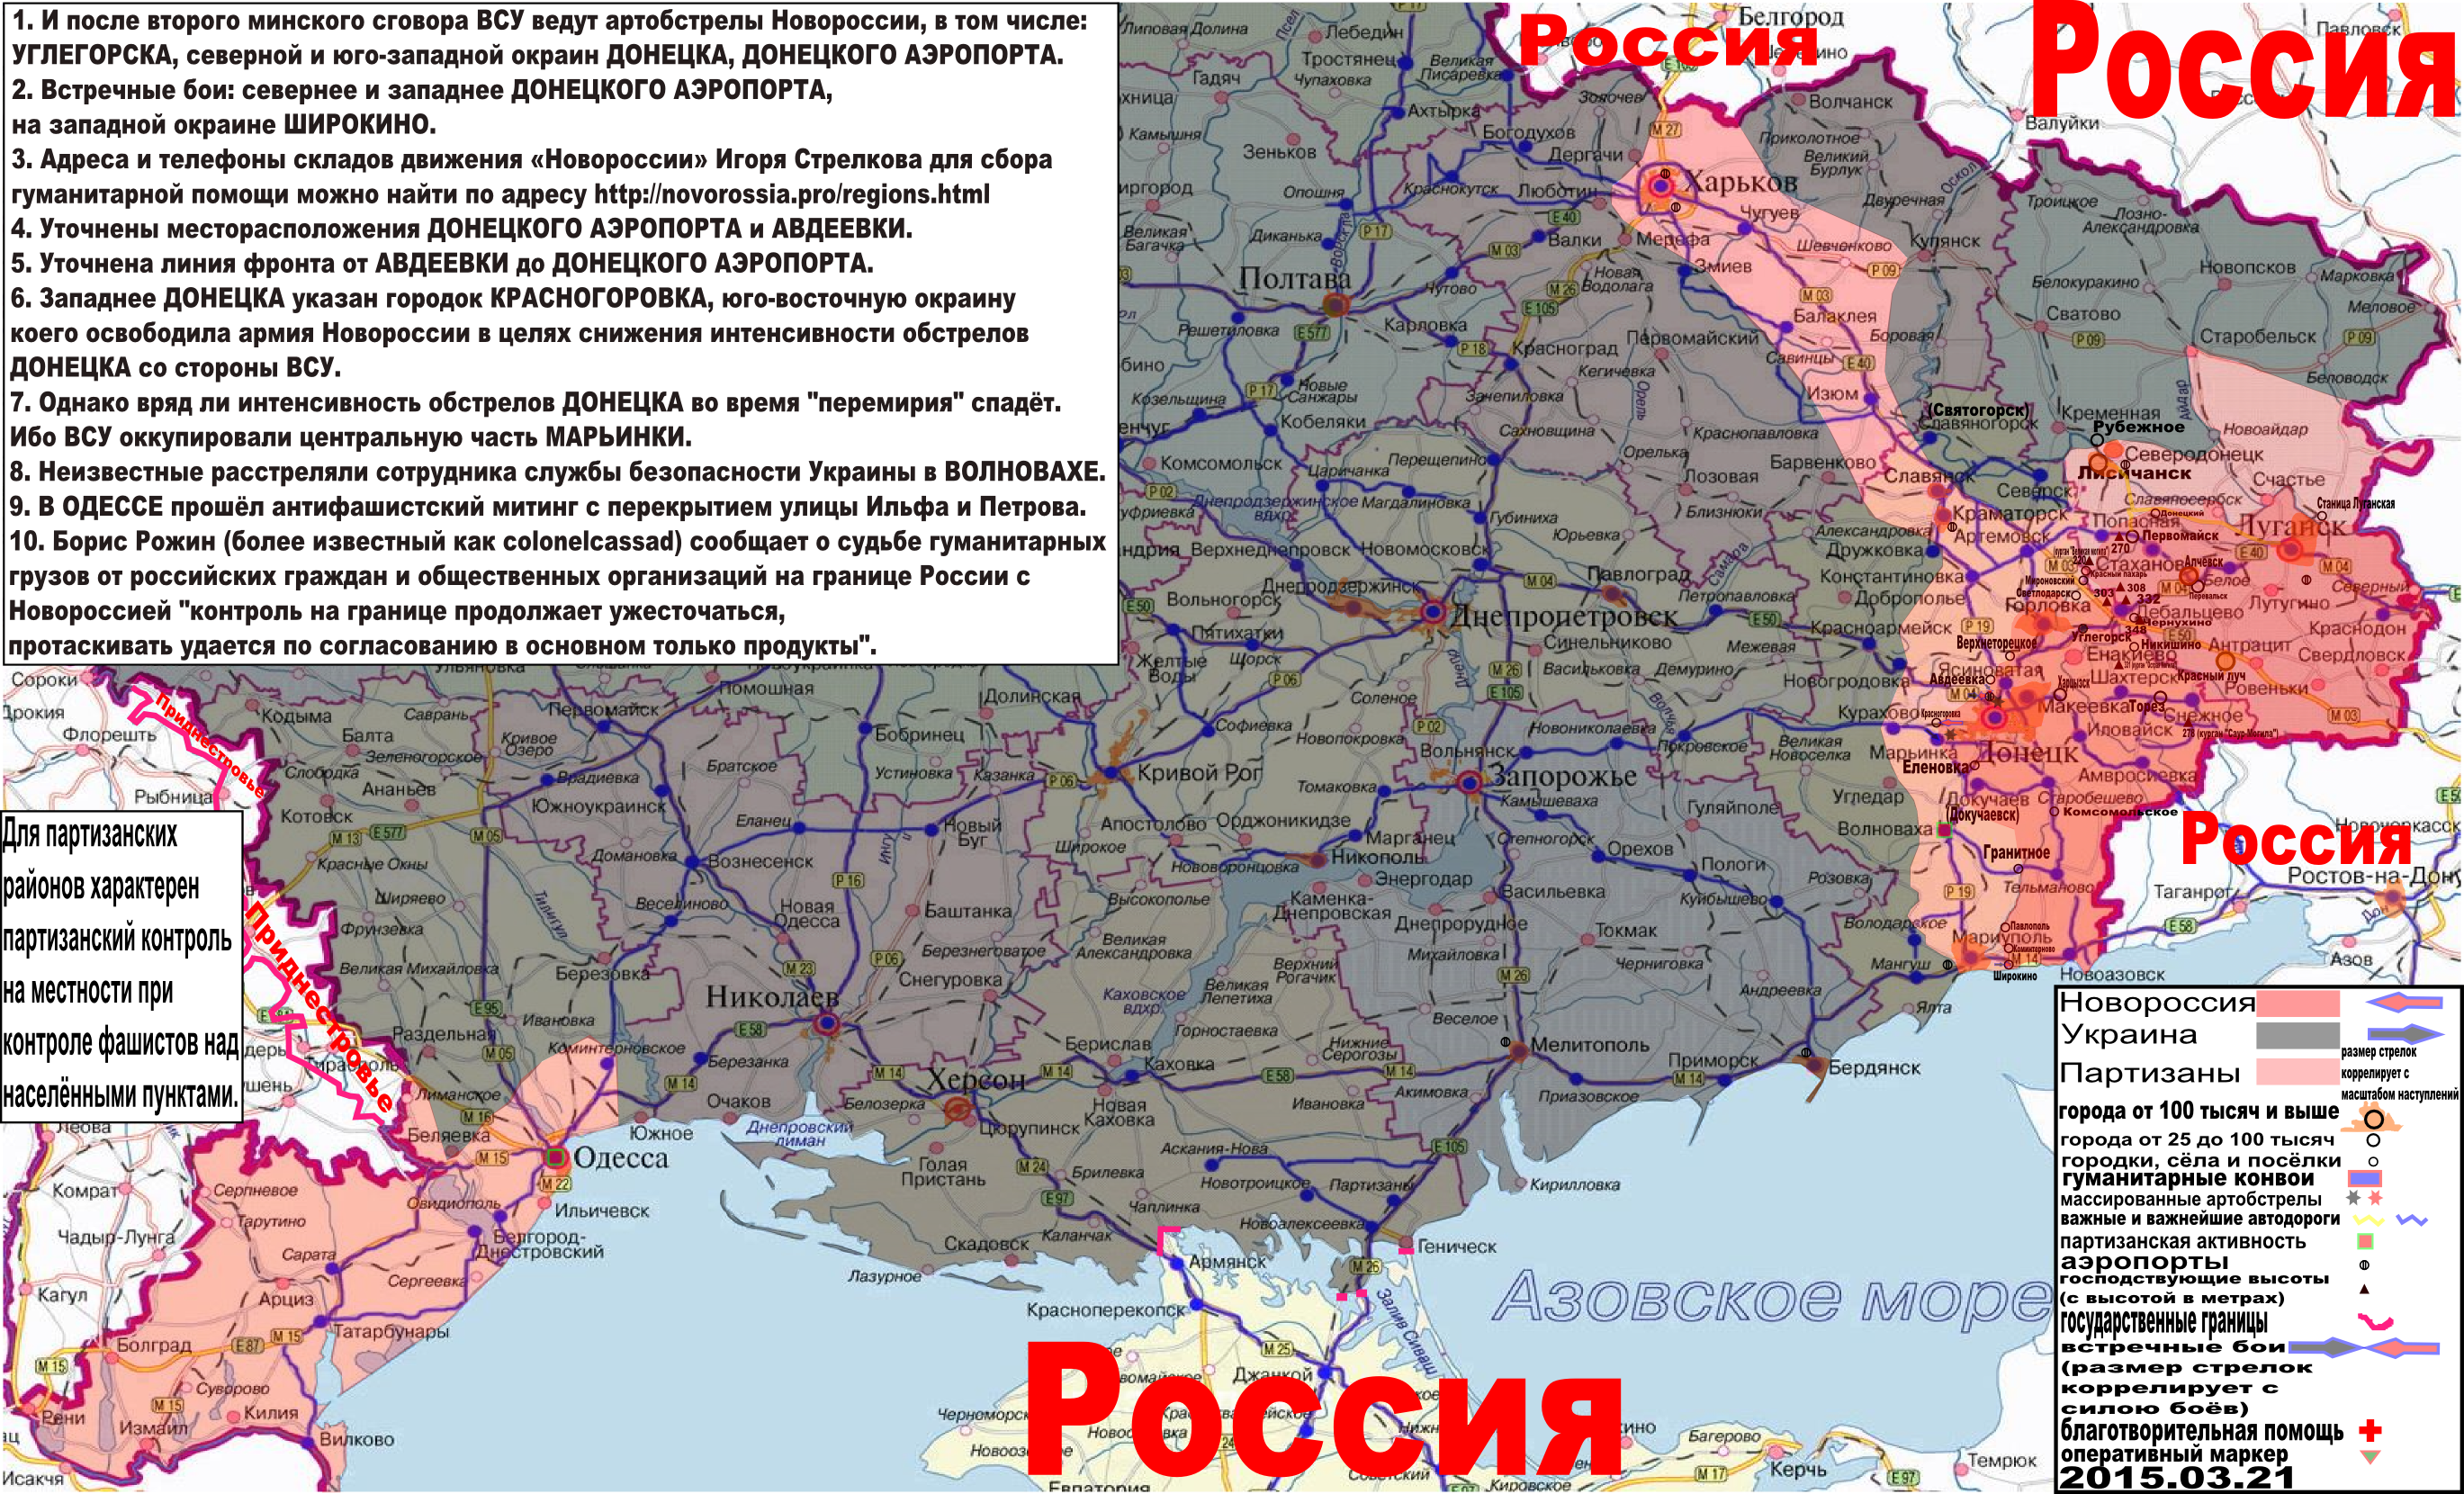 Карта боевых действий и гуманитарных вестей Новороссии с партизанскими районами за 21 марта 2015